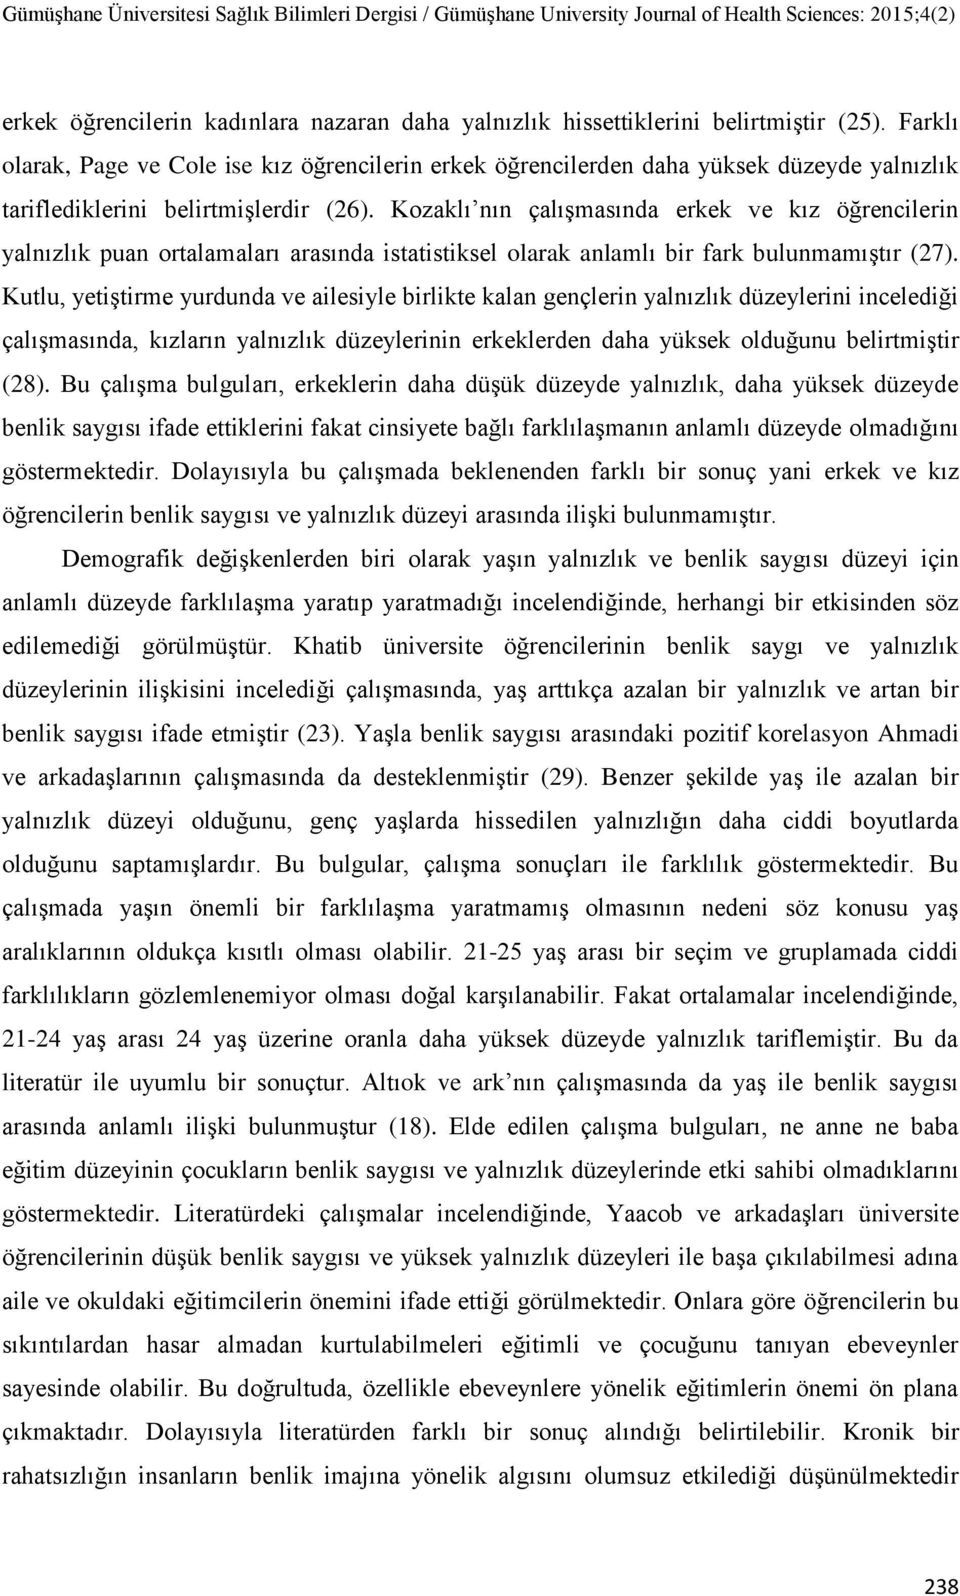 Kozaklı nın çalıģmasında erkek ve kız öğrencilerin yalnızlık puan ortalamaları arasında istatistiksel olarak anlamlı bir fark bulunmamıģtır (27).